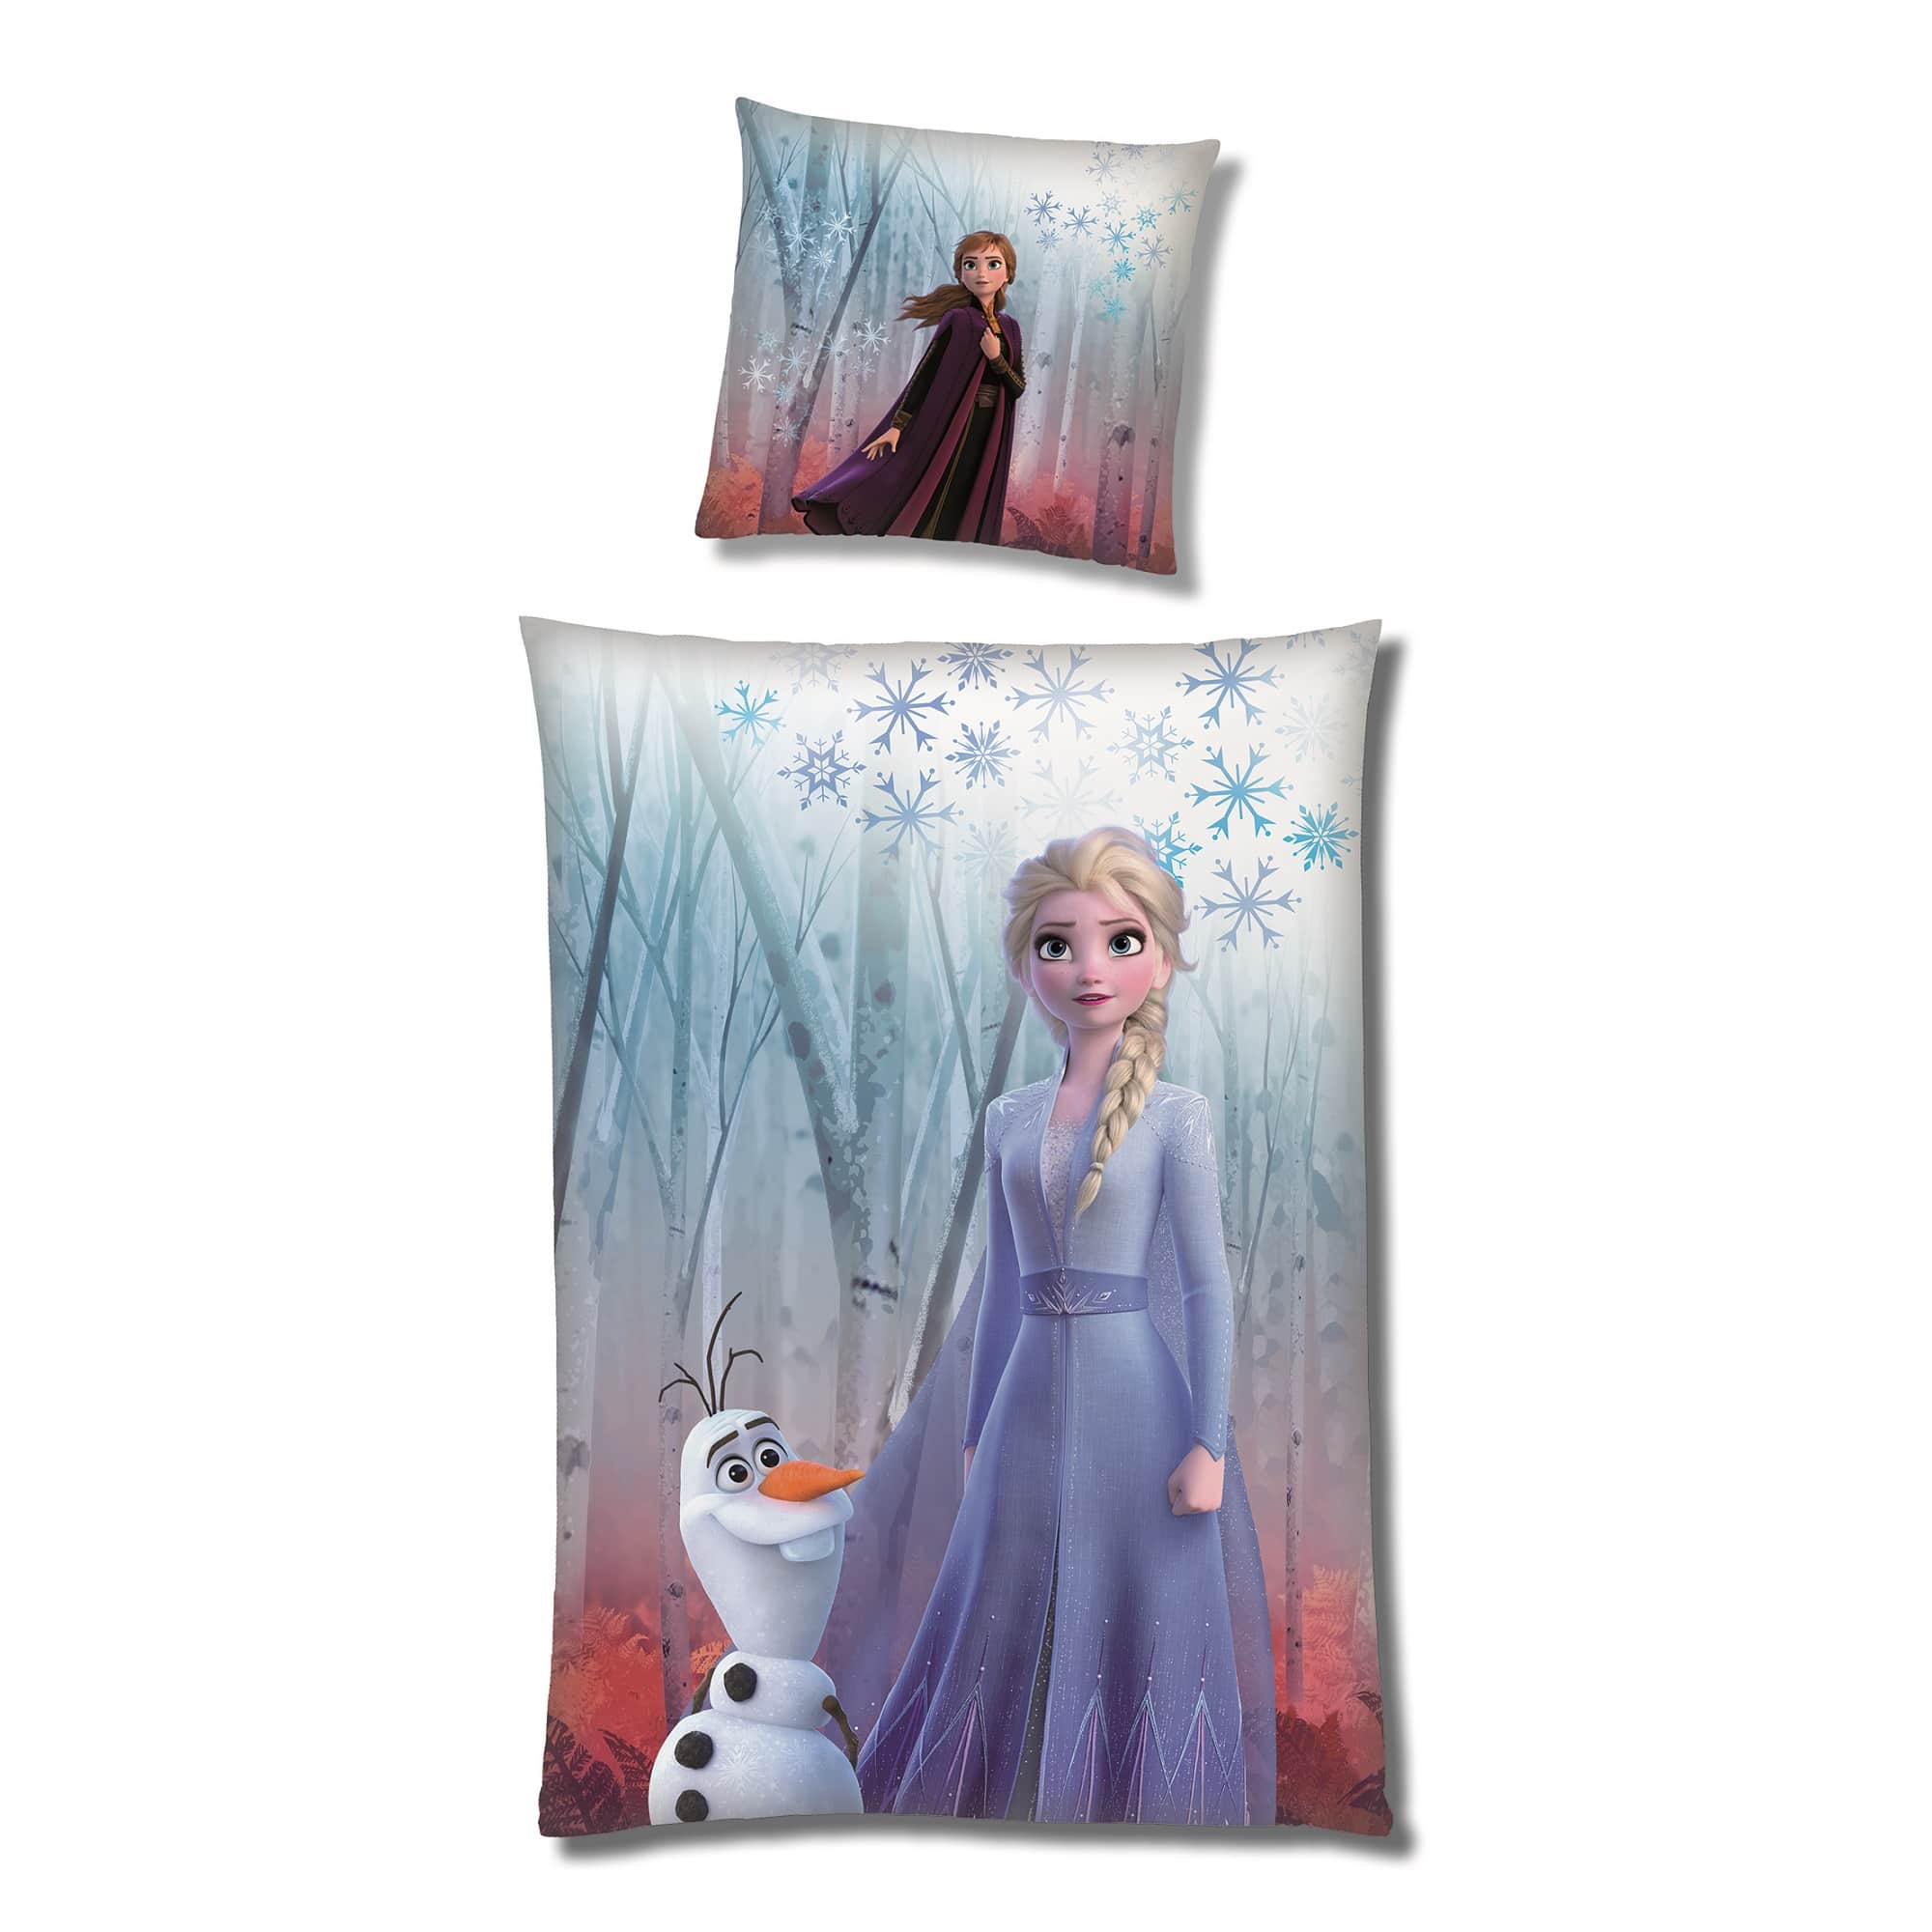 Frozen Anna und Elsa Microfaser Bettwäsche Vorderseite mit Elsa und Olaf auf Decke und Anna auf Kopfkissen